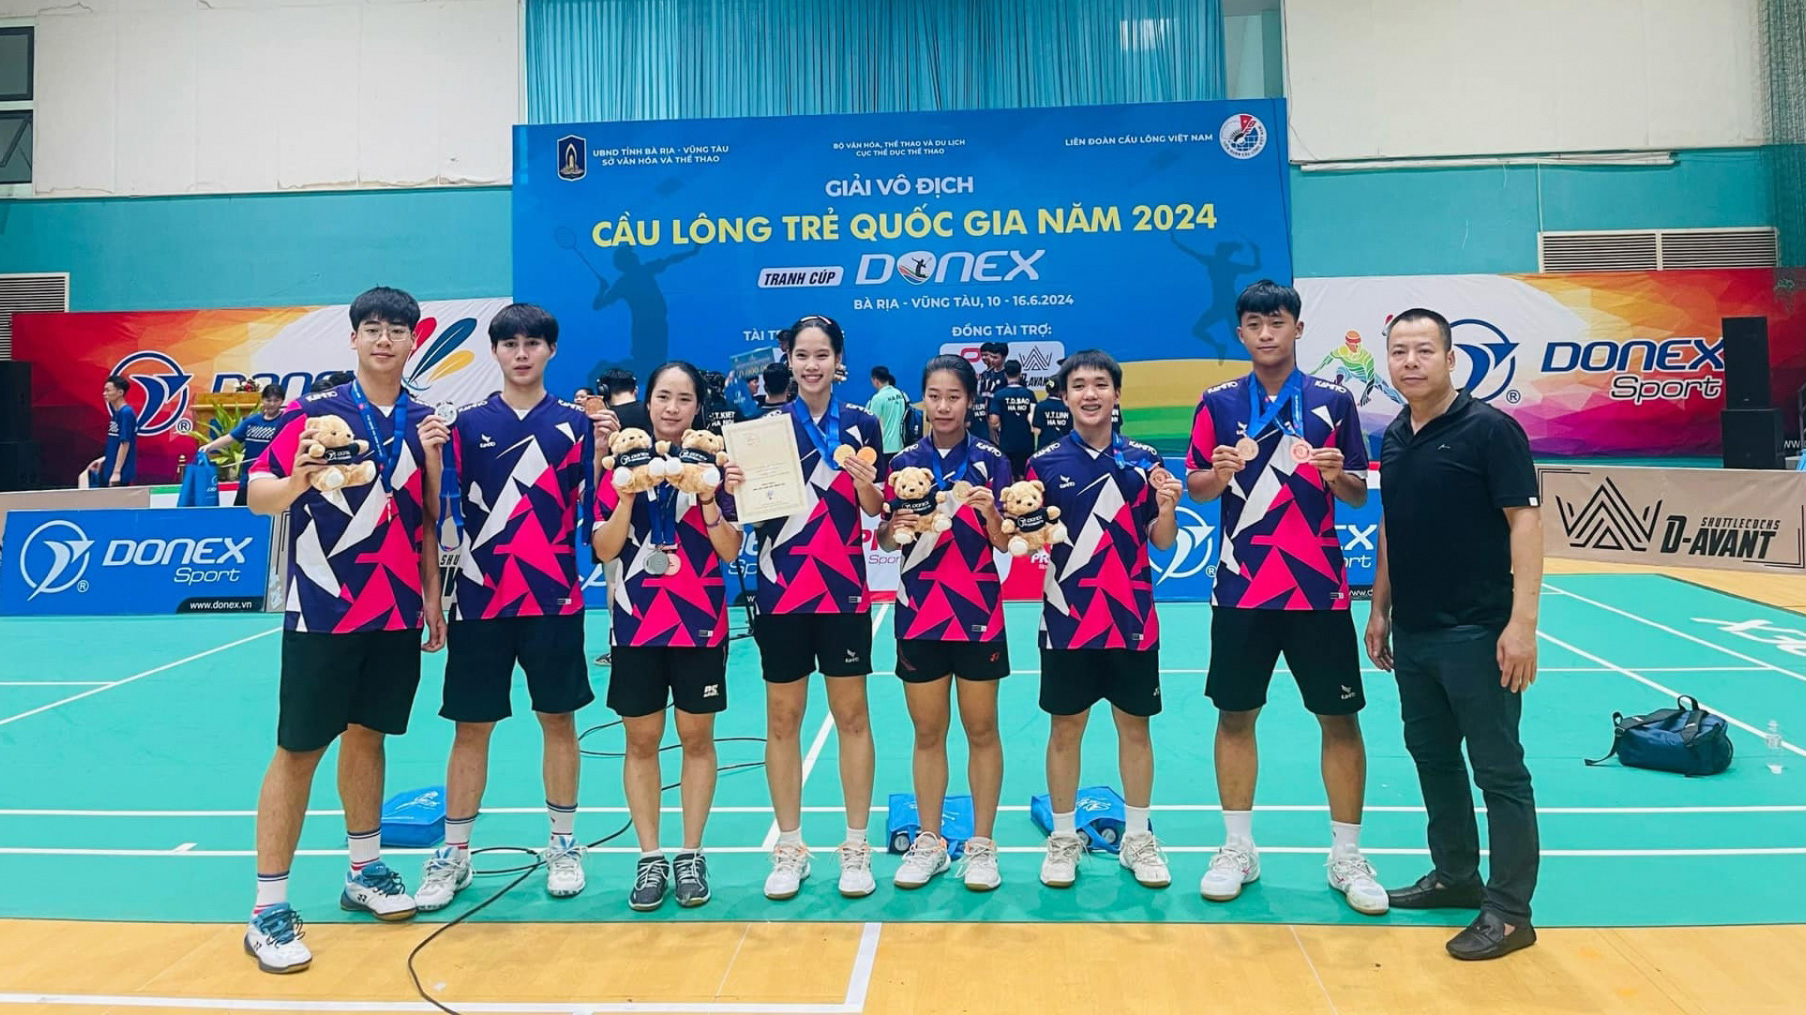 Đội tuyển Cầu lông tỉnh Lâm Đồng tham dự giải